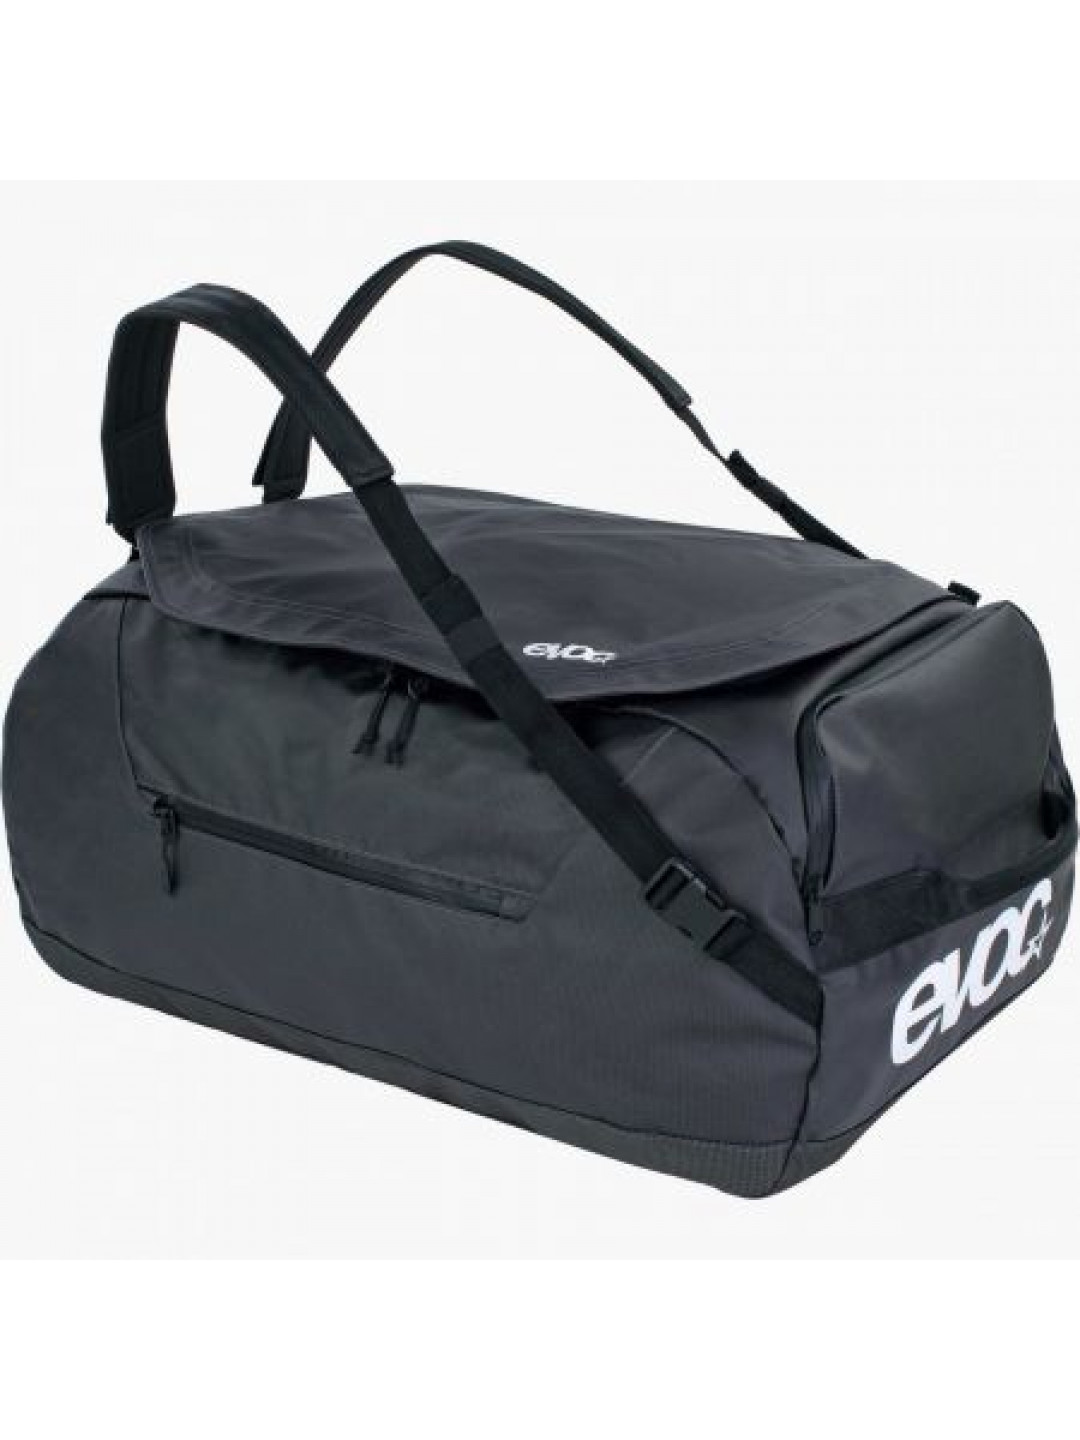 Batoh Evoc Duffle Bag 60 – Černá – 60L